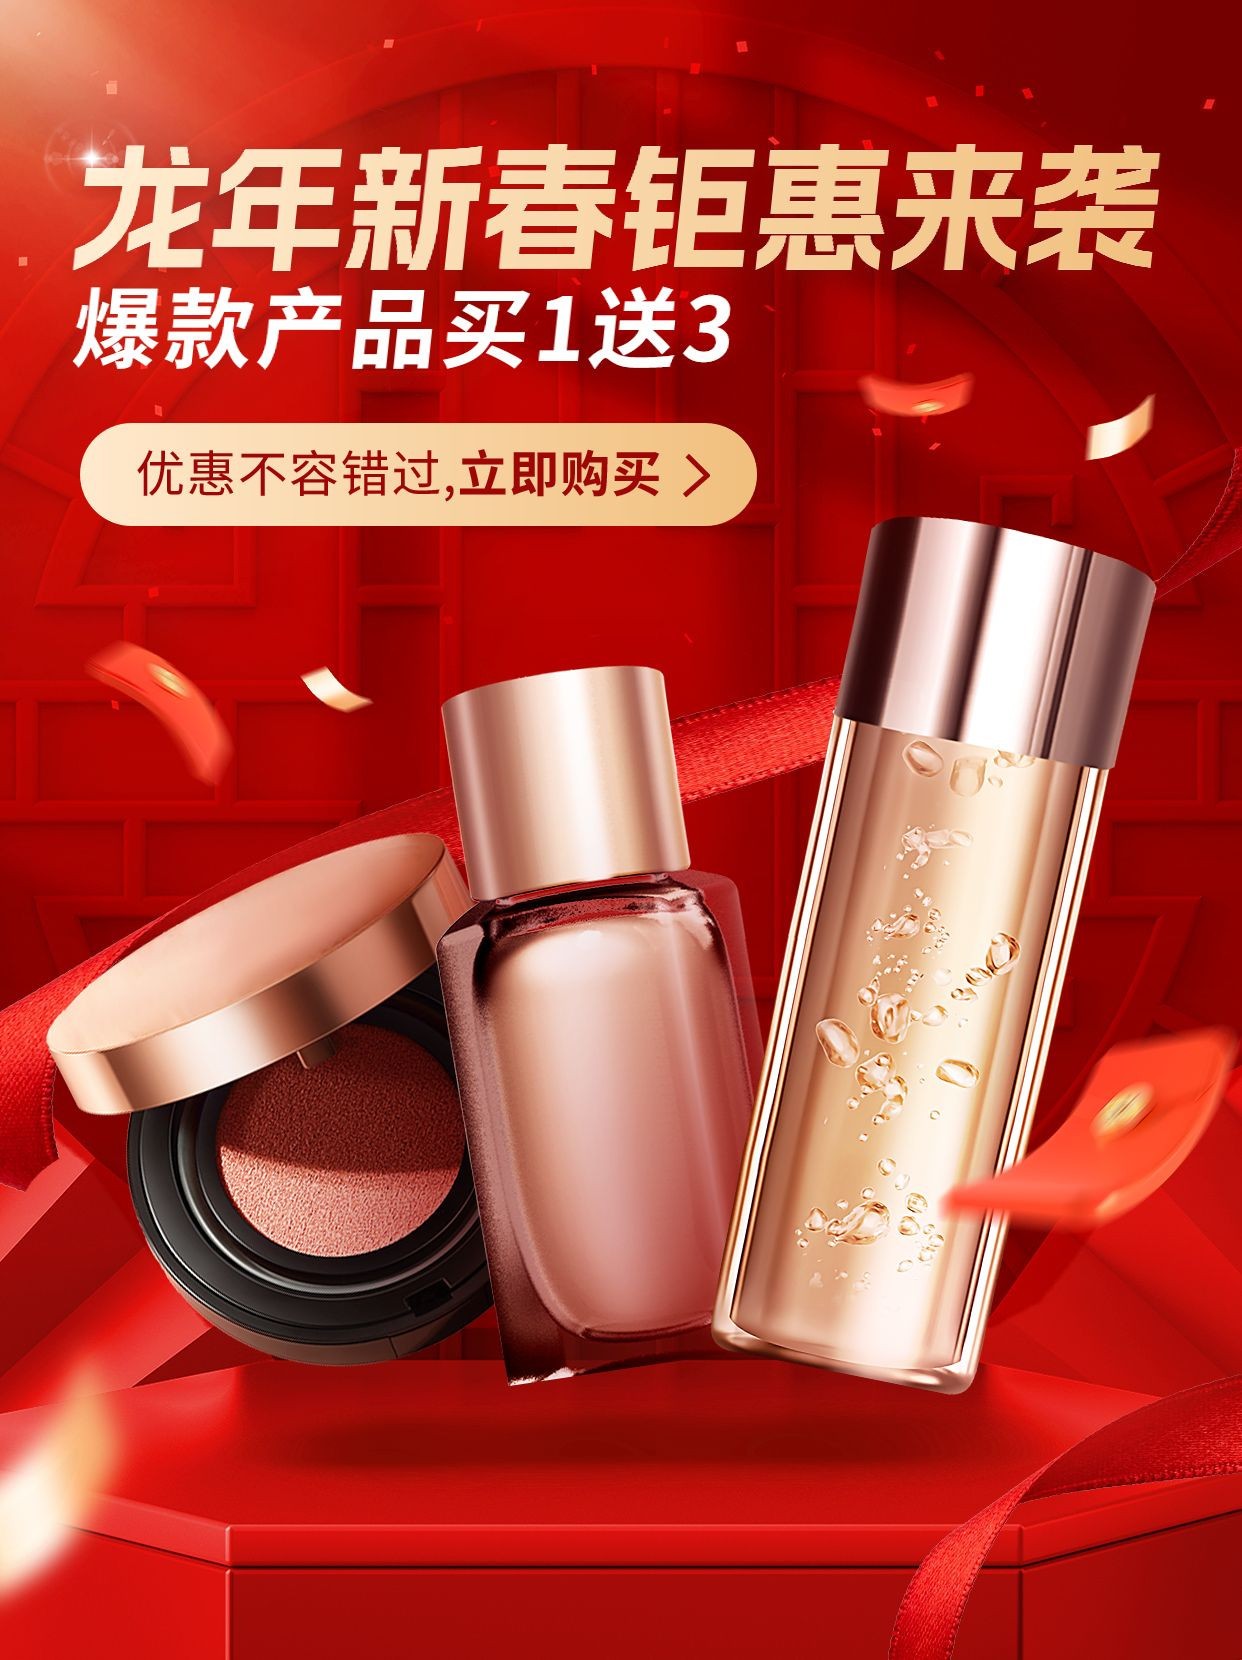 春节新春促销活动美妆产品小红书配图